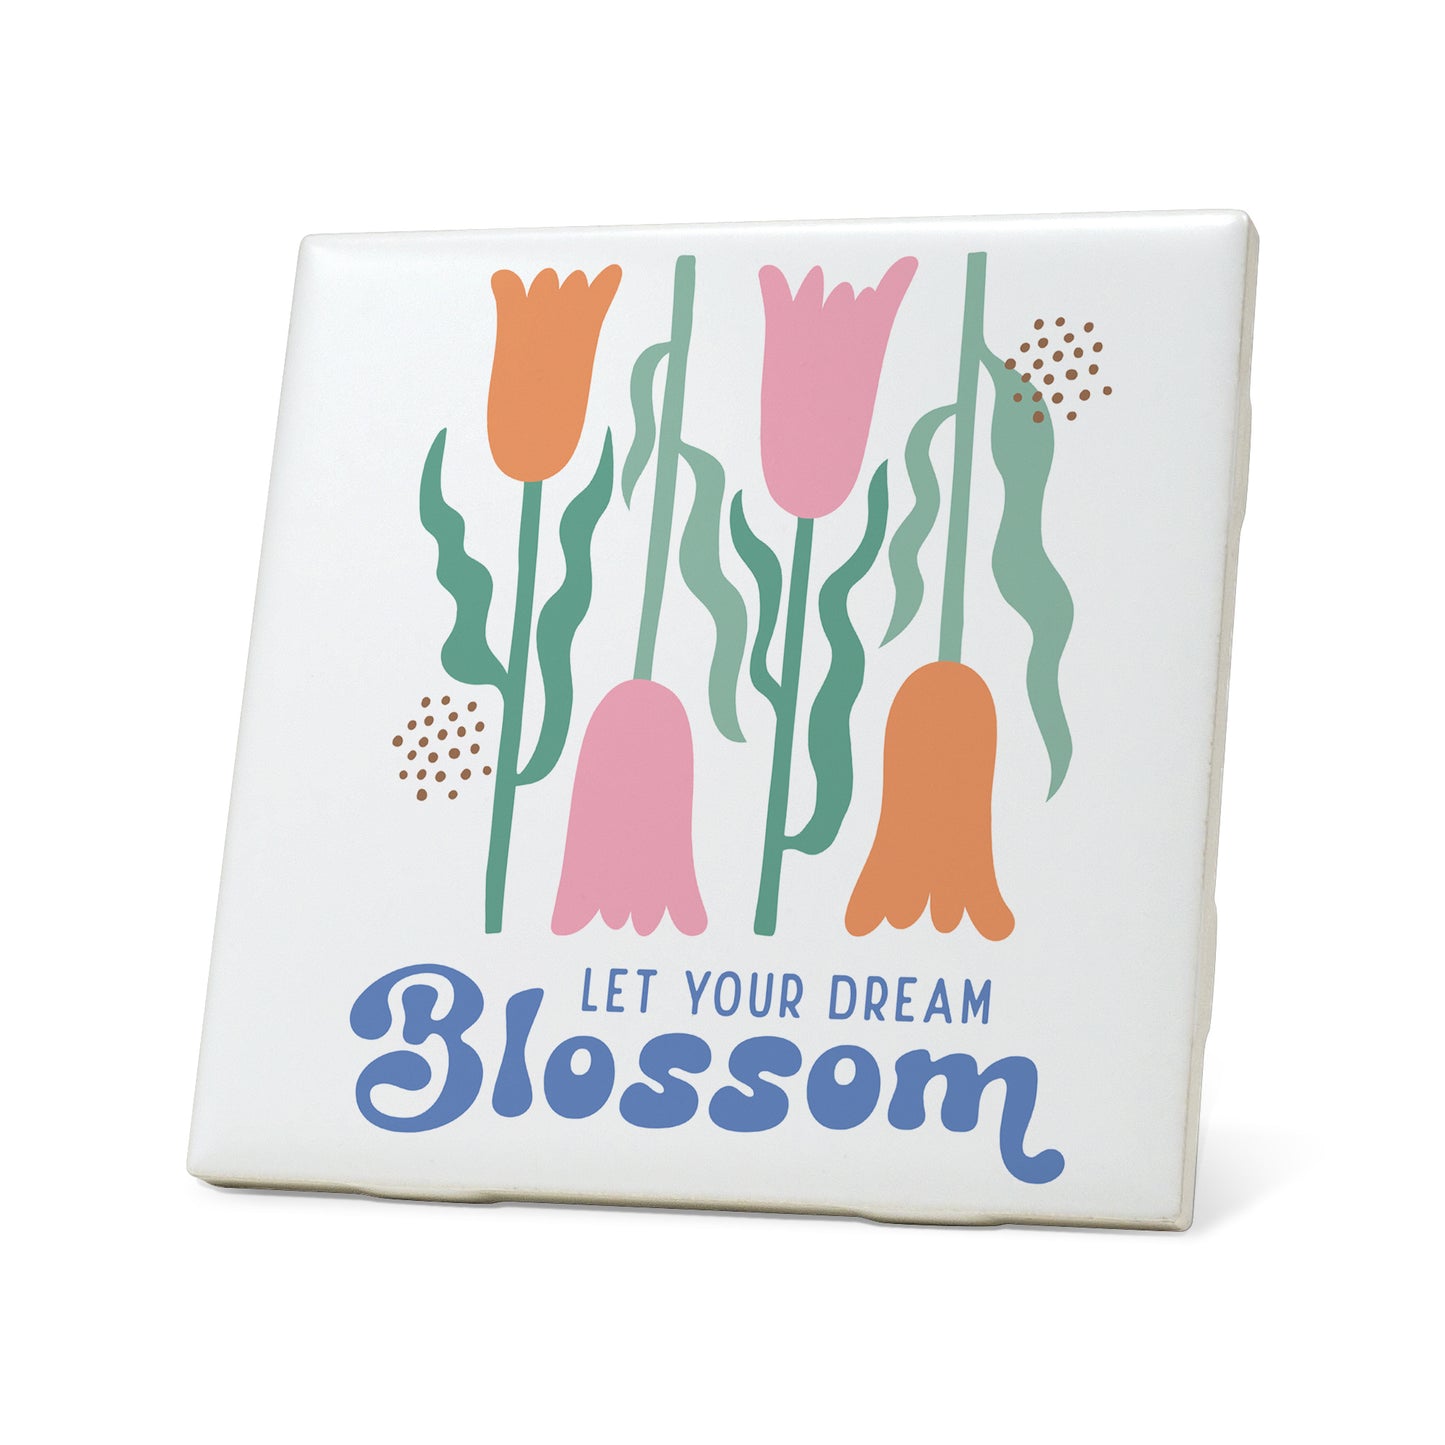 Let your dream blossom boho Graphic Coasters